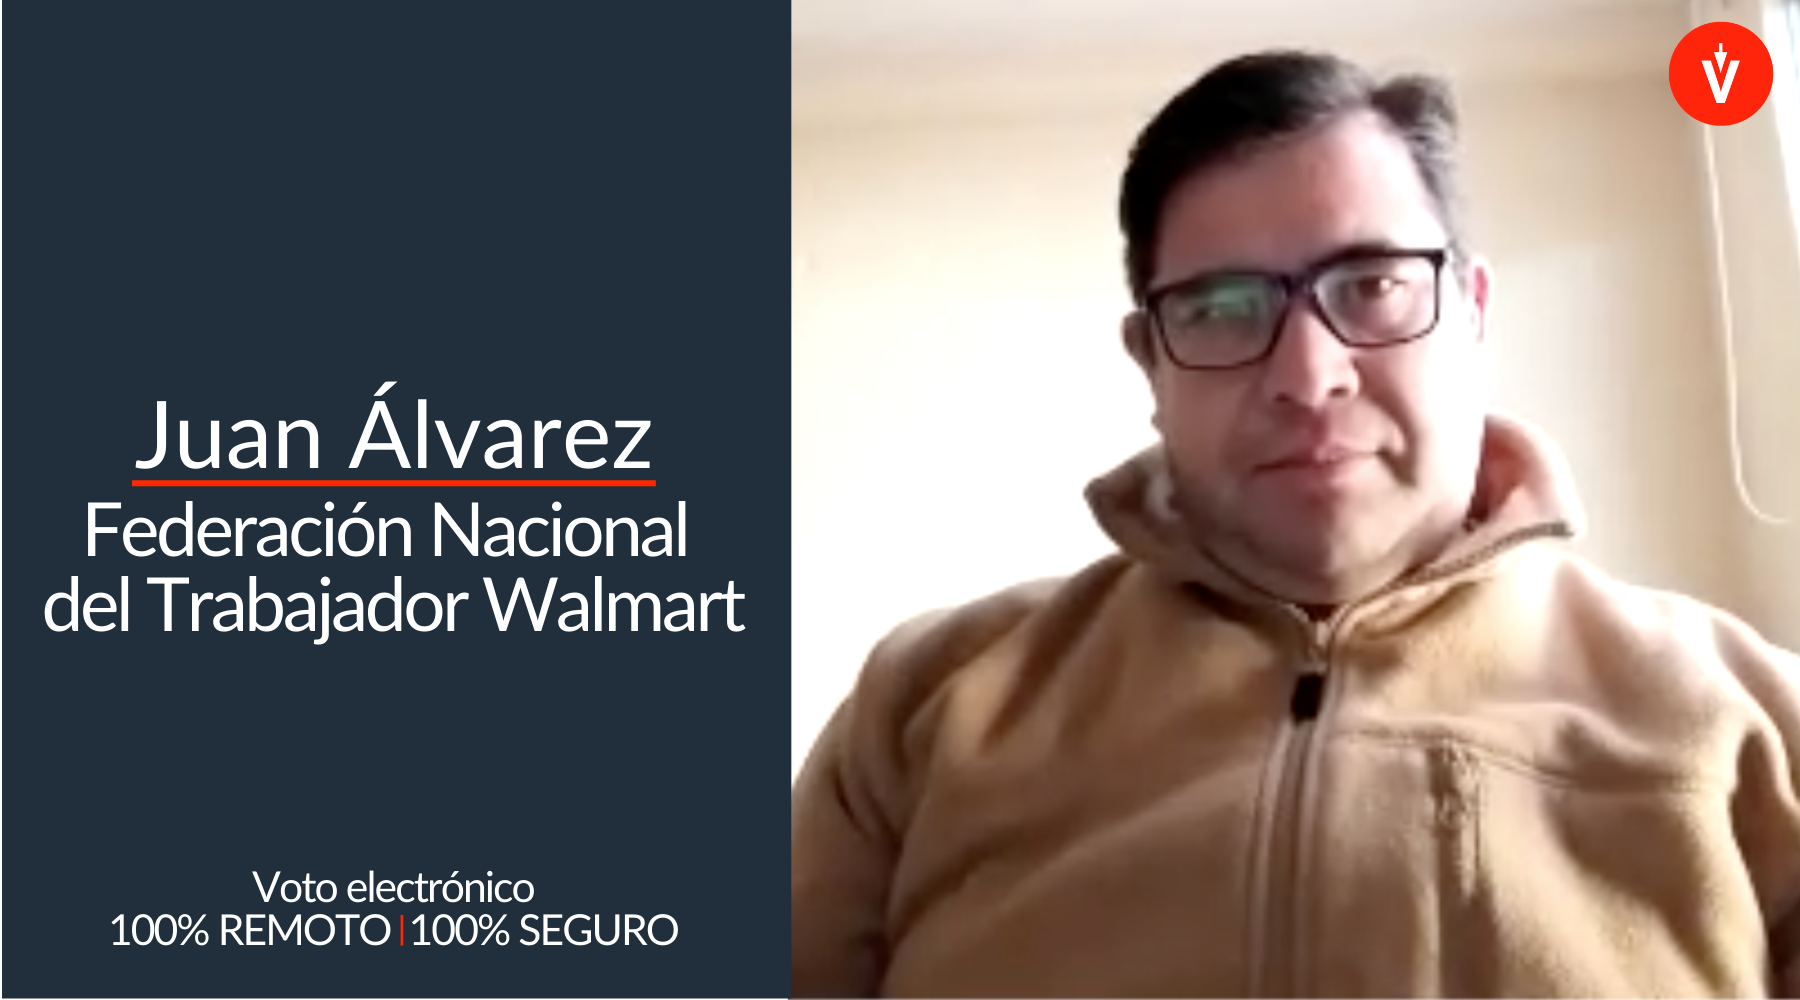 Juan Álvarez, Federación Nacional del Trabajor Walmart, con parche azul al lado y logo de EVoting